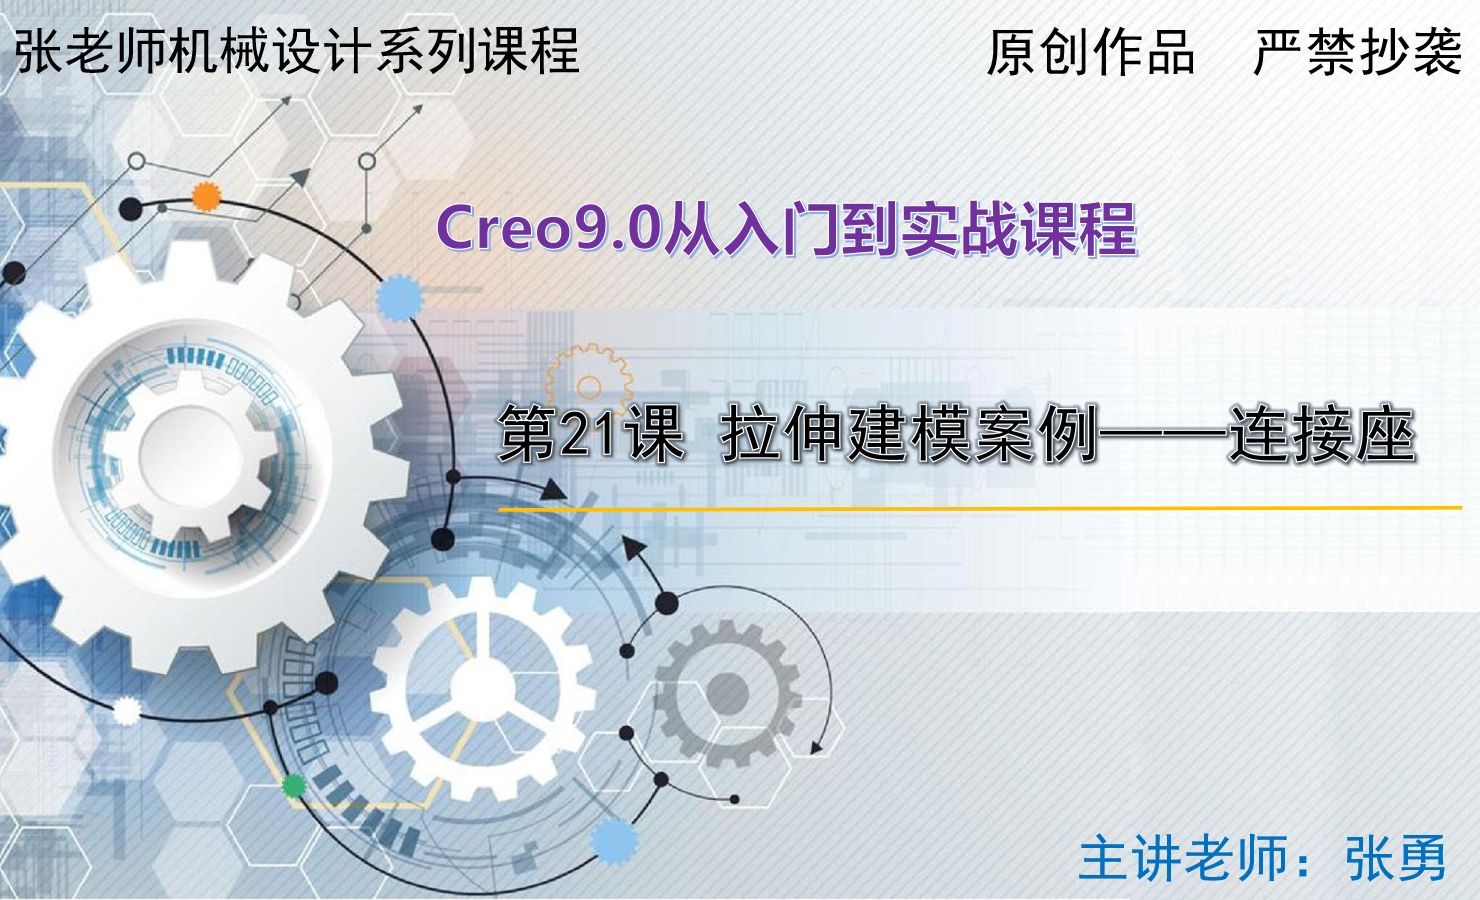 【连接座】拉伸建模案例-Creo9.0从入门到实战